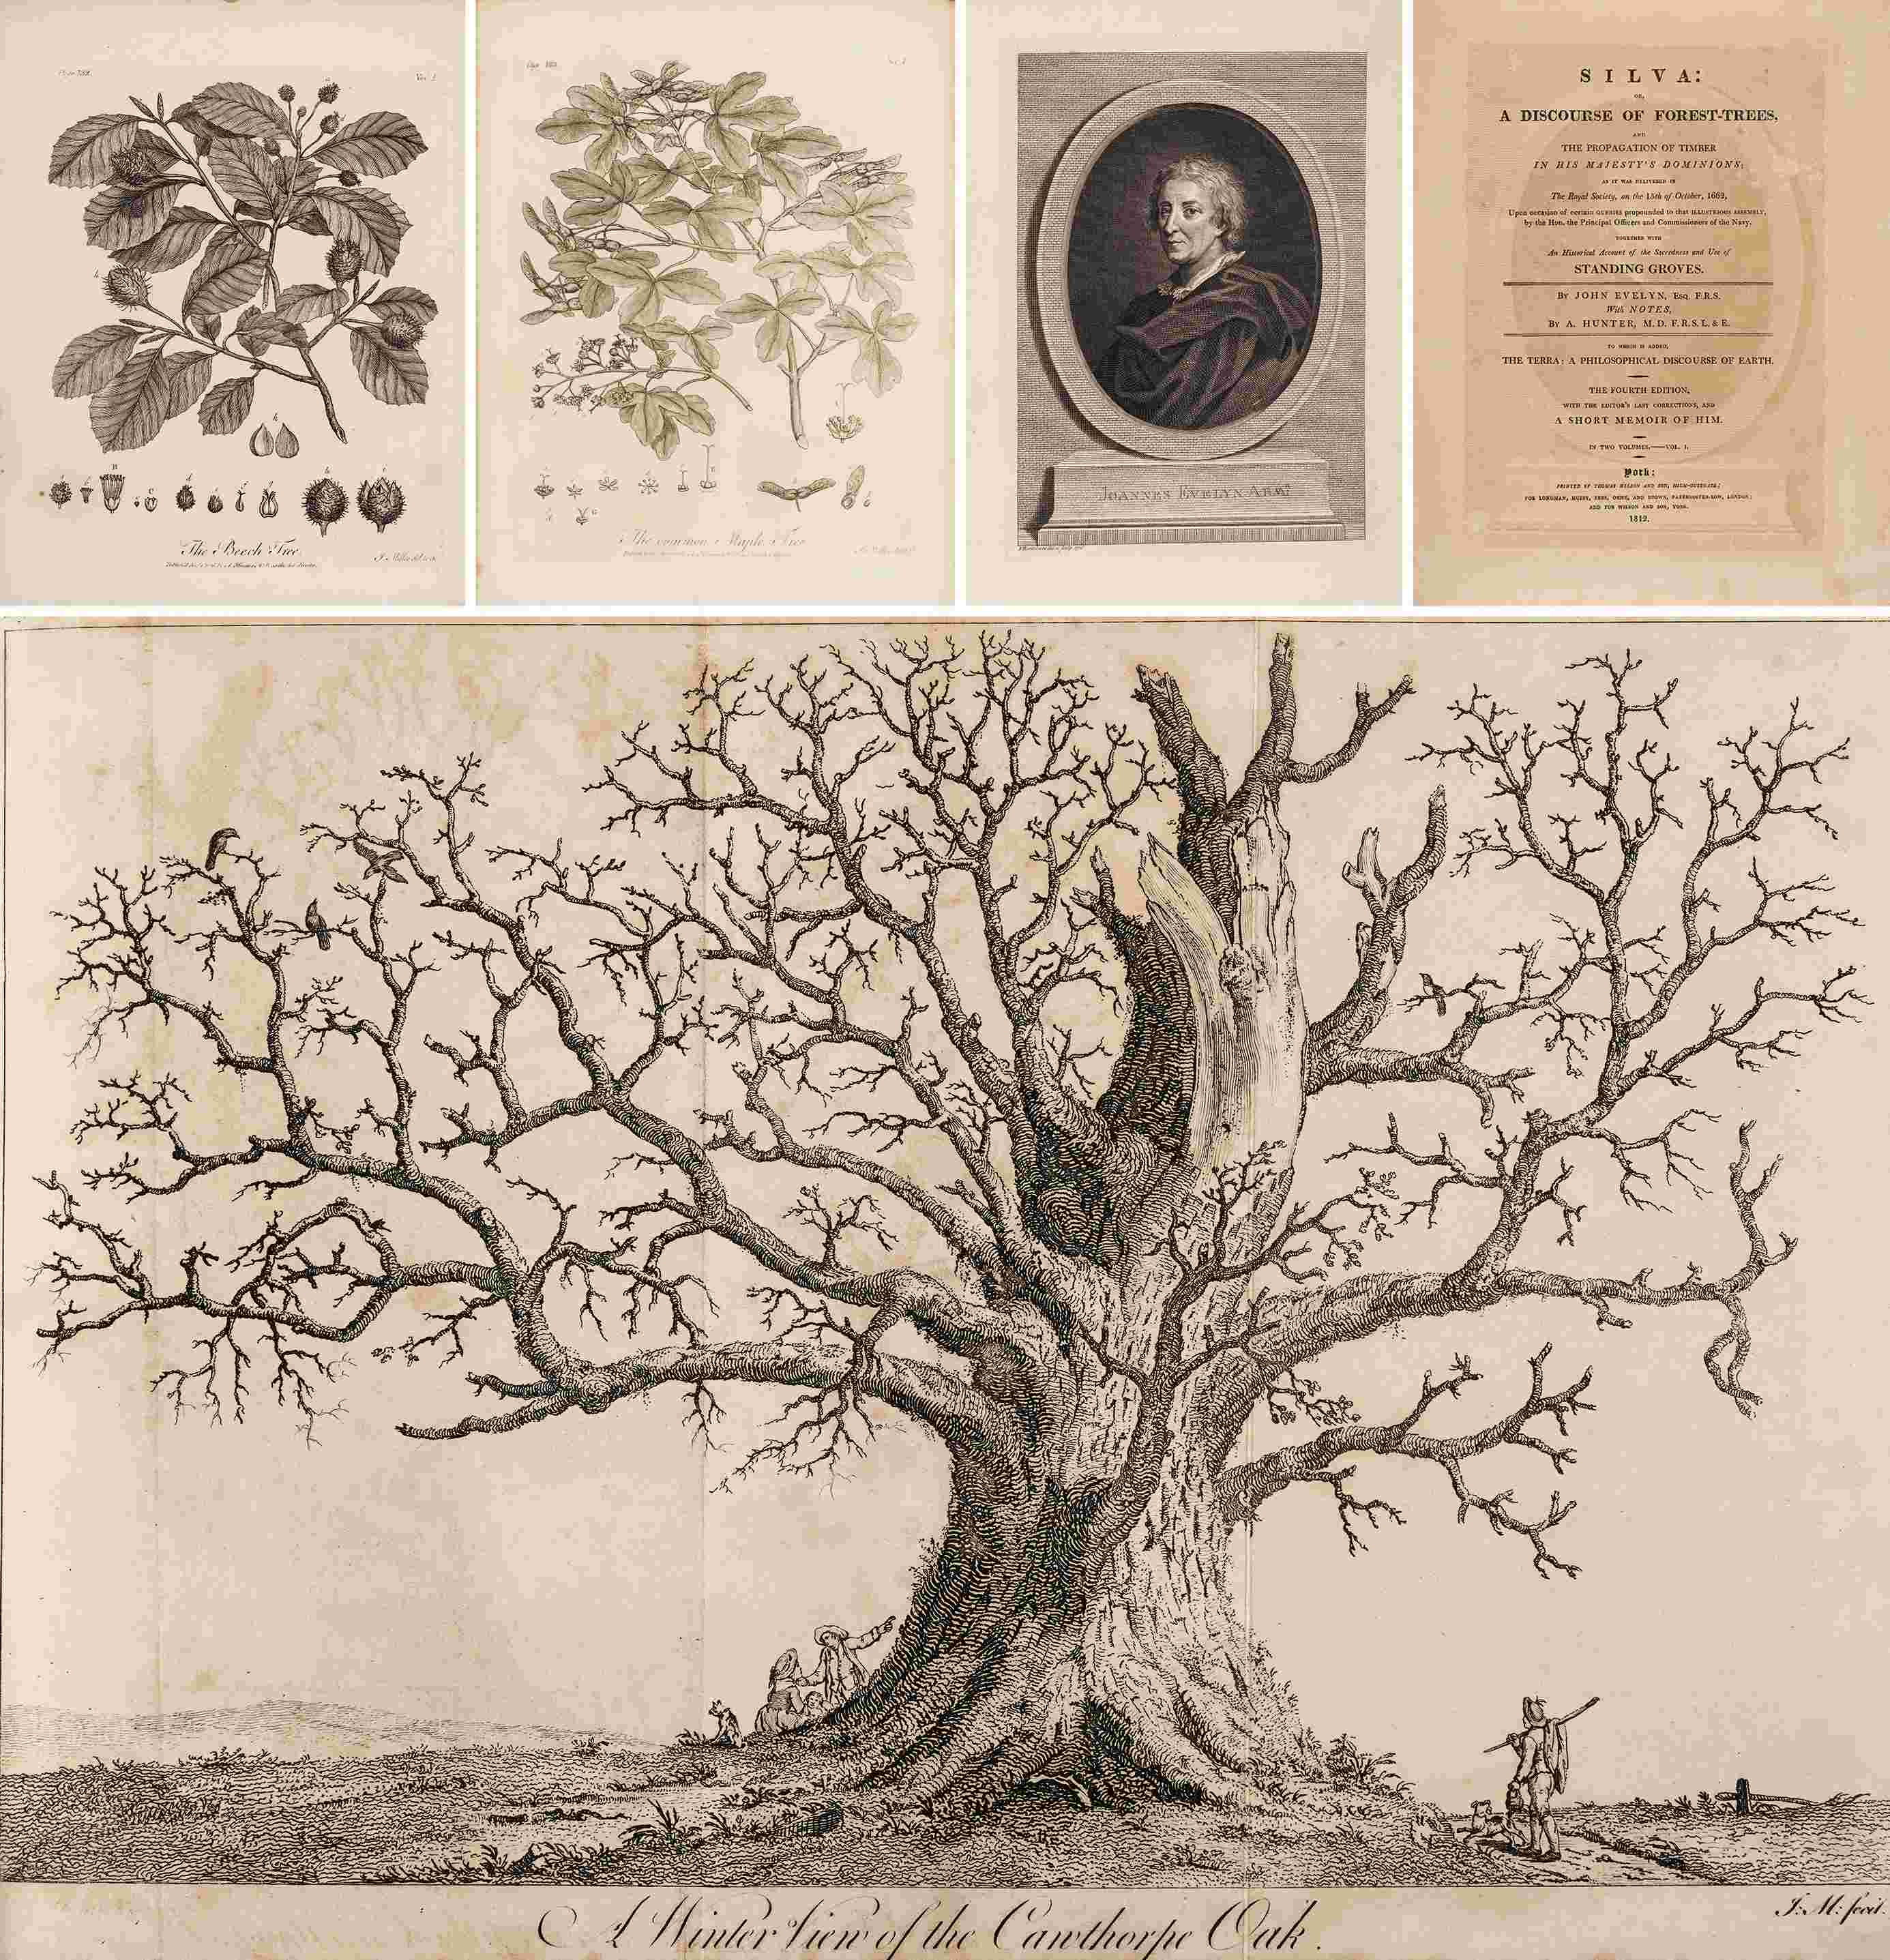 英国森林志 1812年伦敦 Thomas Wilson & Son 出版